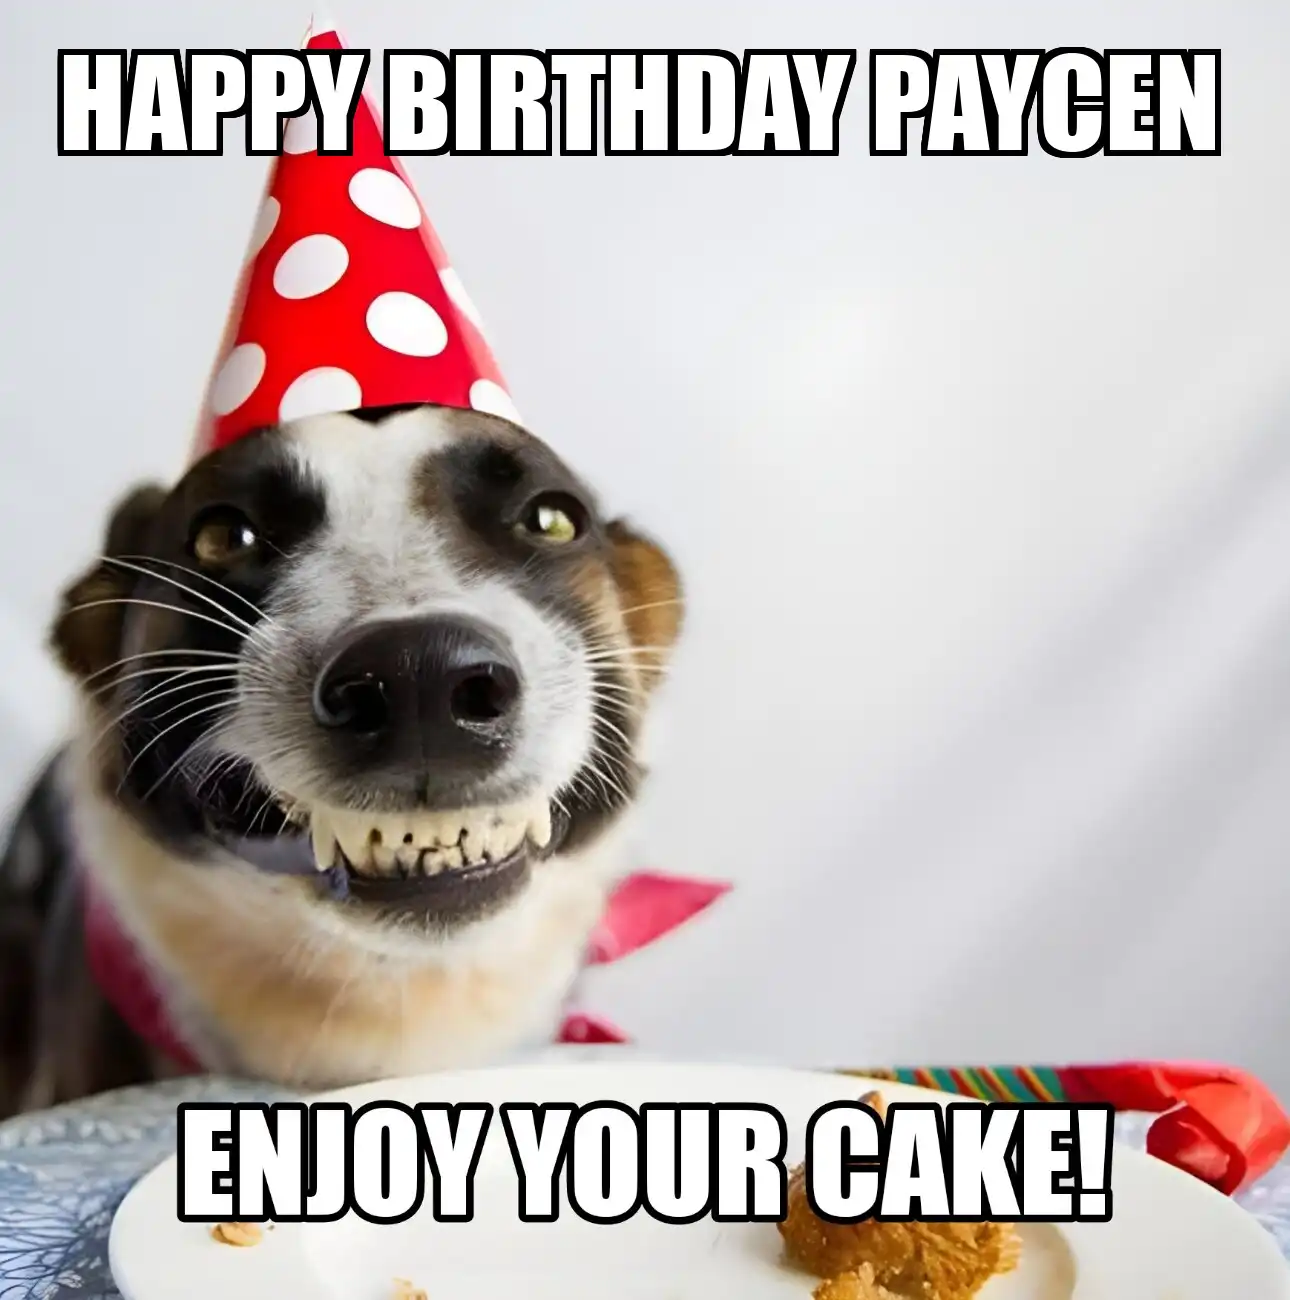 Happy Birthday Paycen Enjoy Your Cake Dog Meme